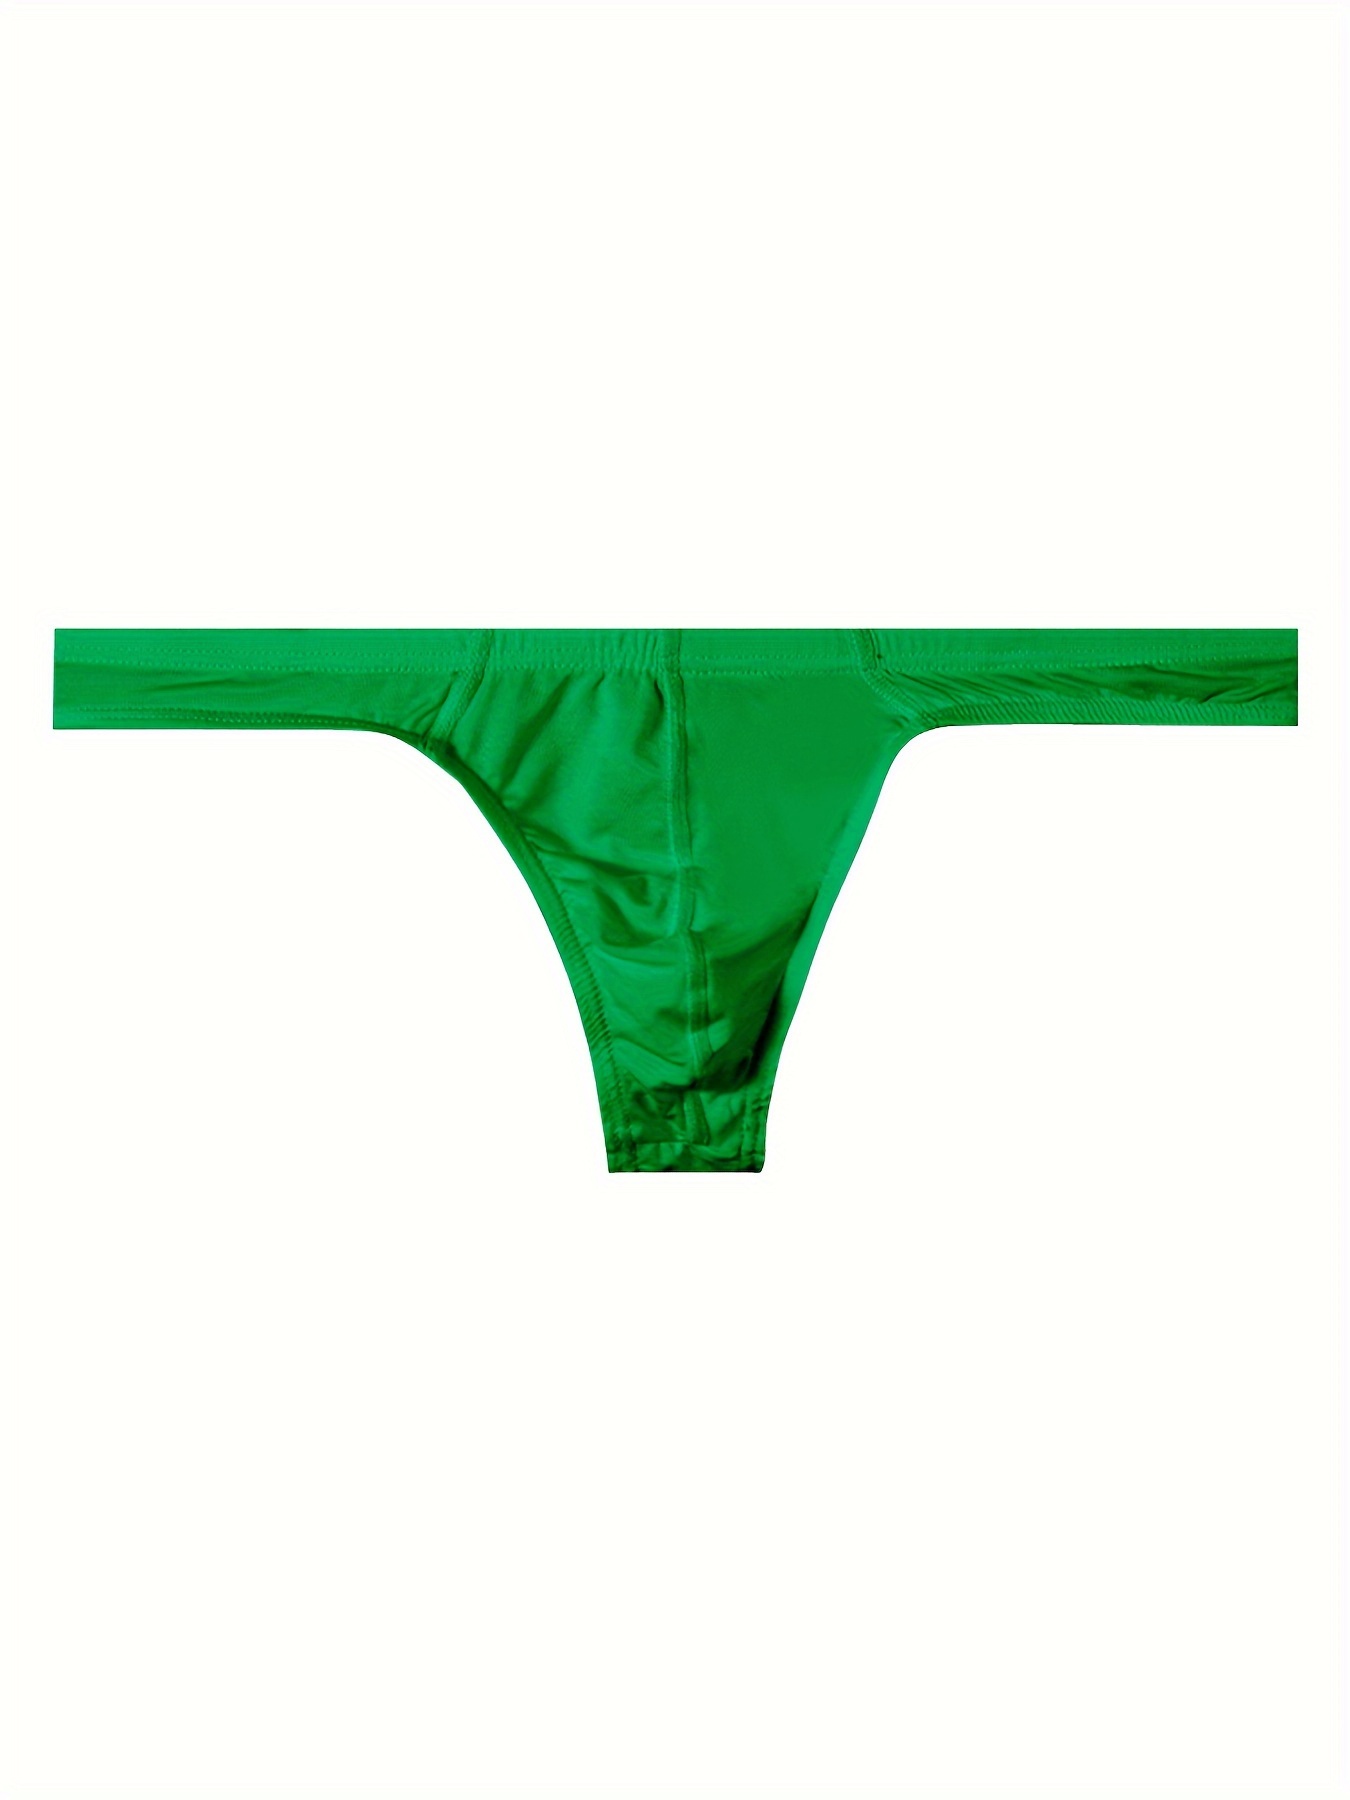 Pirlim Men's Underwear Sexy Thong Sports Inner Briefs Jockstrap